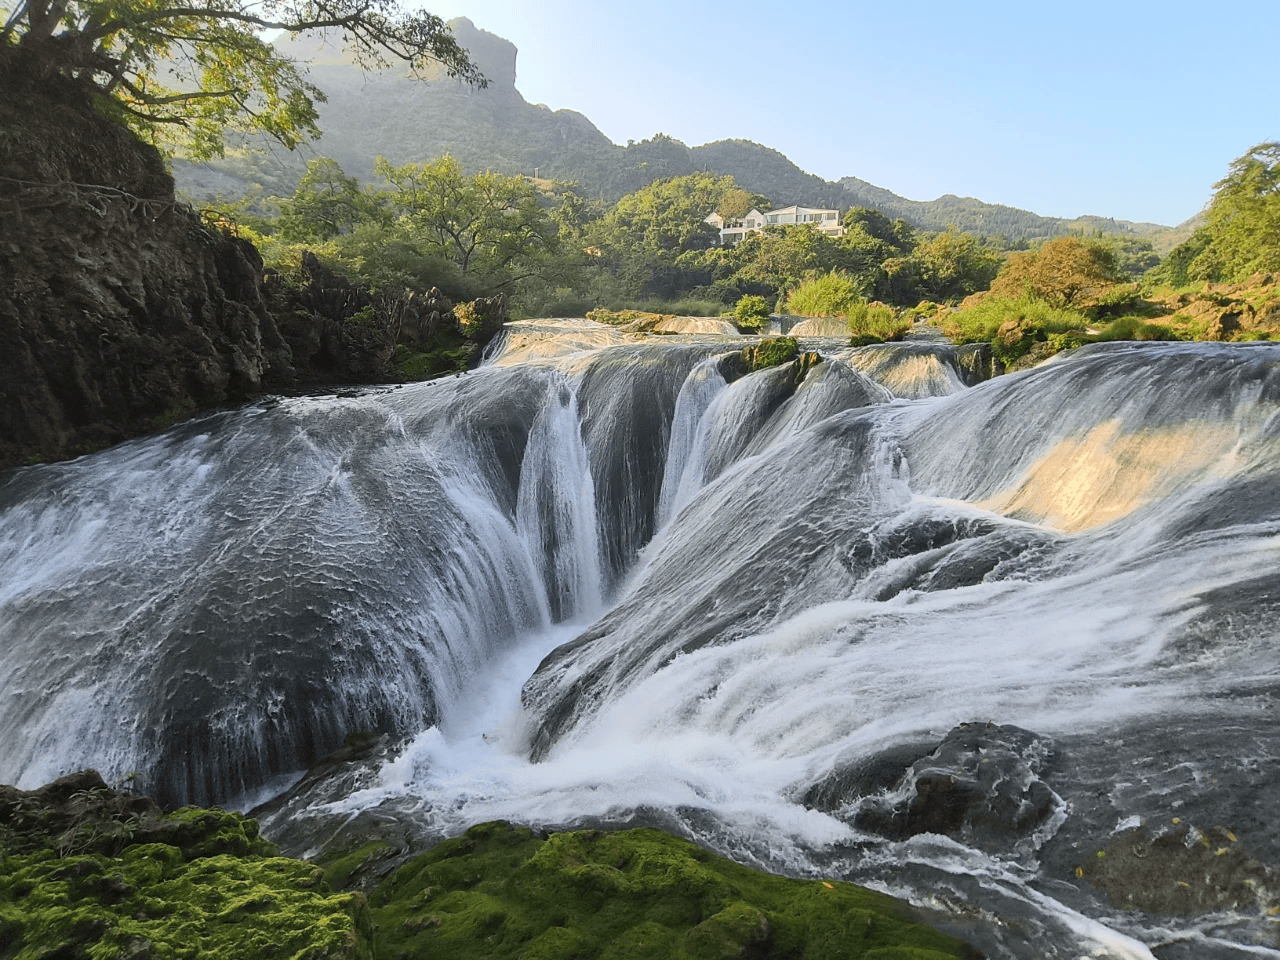 除了观瀑亭的壮丽景观,黄果树瀑布下游6公里处还有漂流项目